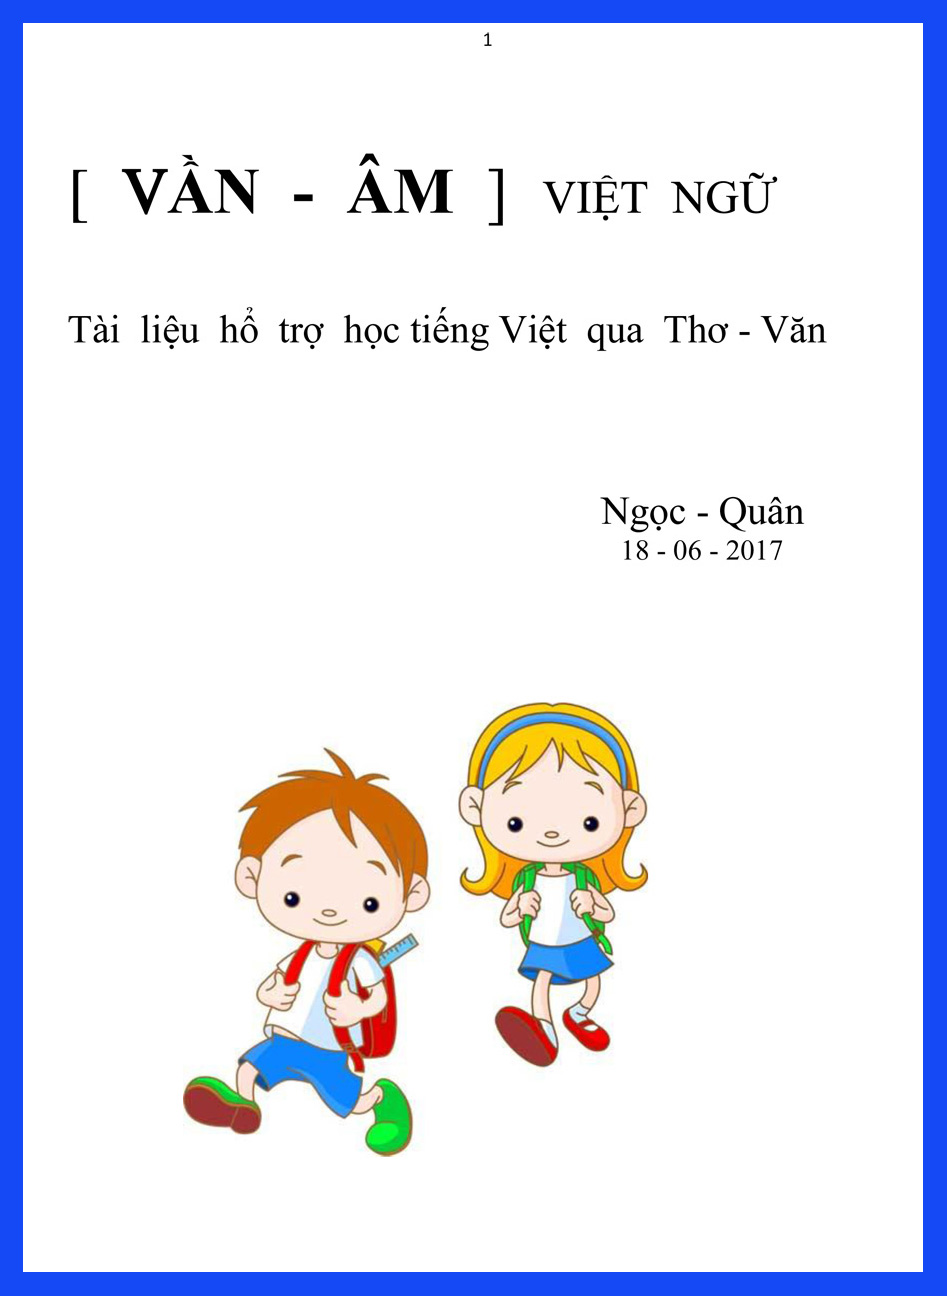 Vần-Âm Việt Ngữ - Tài liệu hổ trợ học tiếng Việt qua Thơ-Văn_Ngọc - Quân